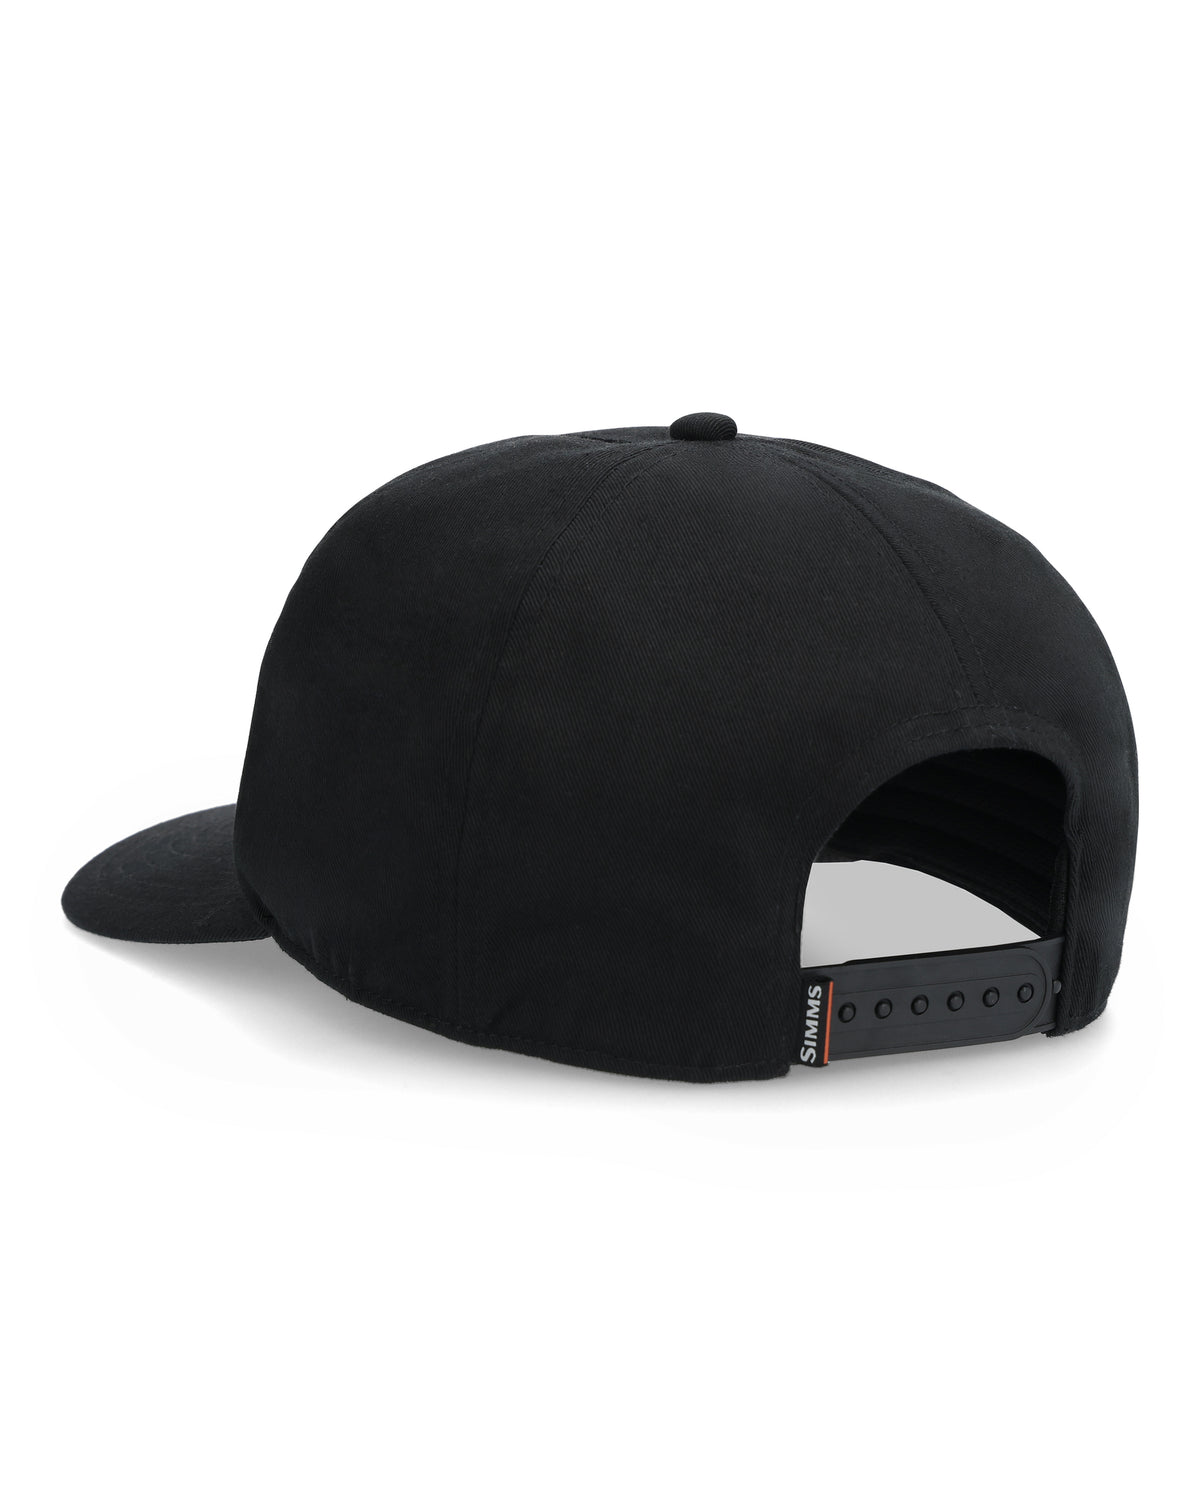 Simms Double Haul Black Patch Hat